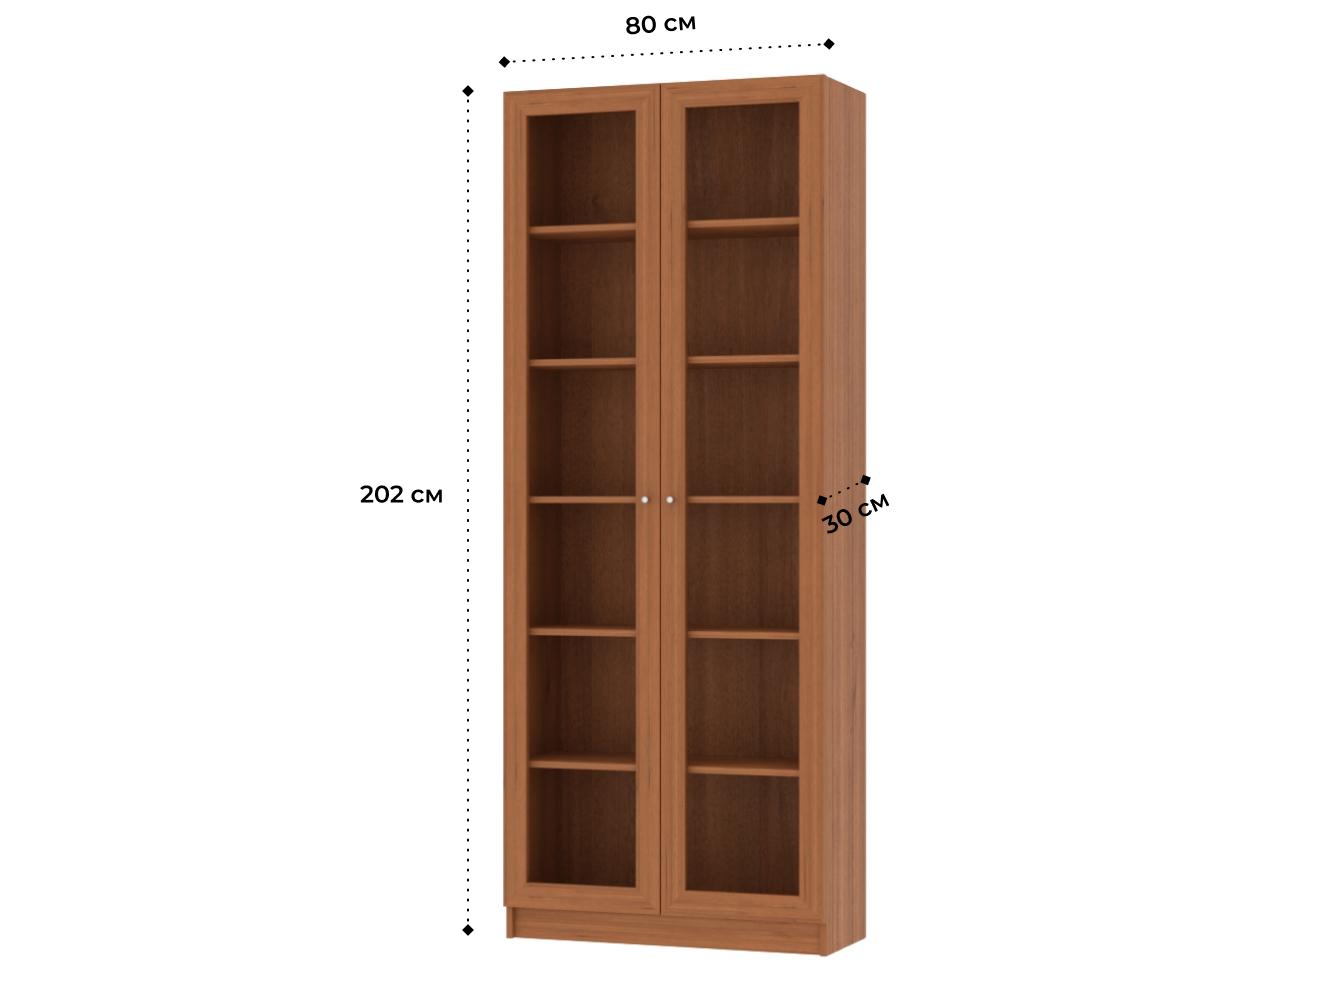 Изображение товара Книжный шкаф Билли 336 walnut guarneri ИКЕА (IKEA), 80x30x202 см на сайте adeta.ru